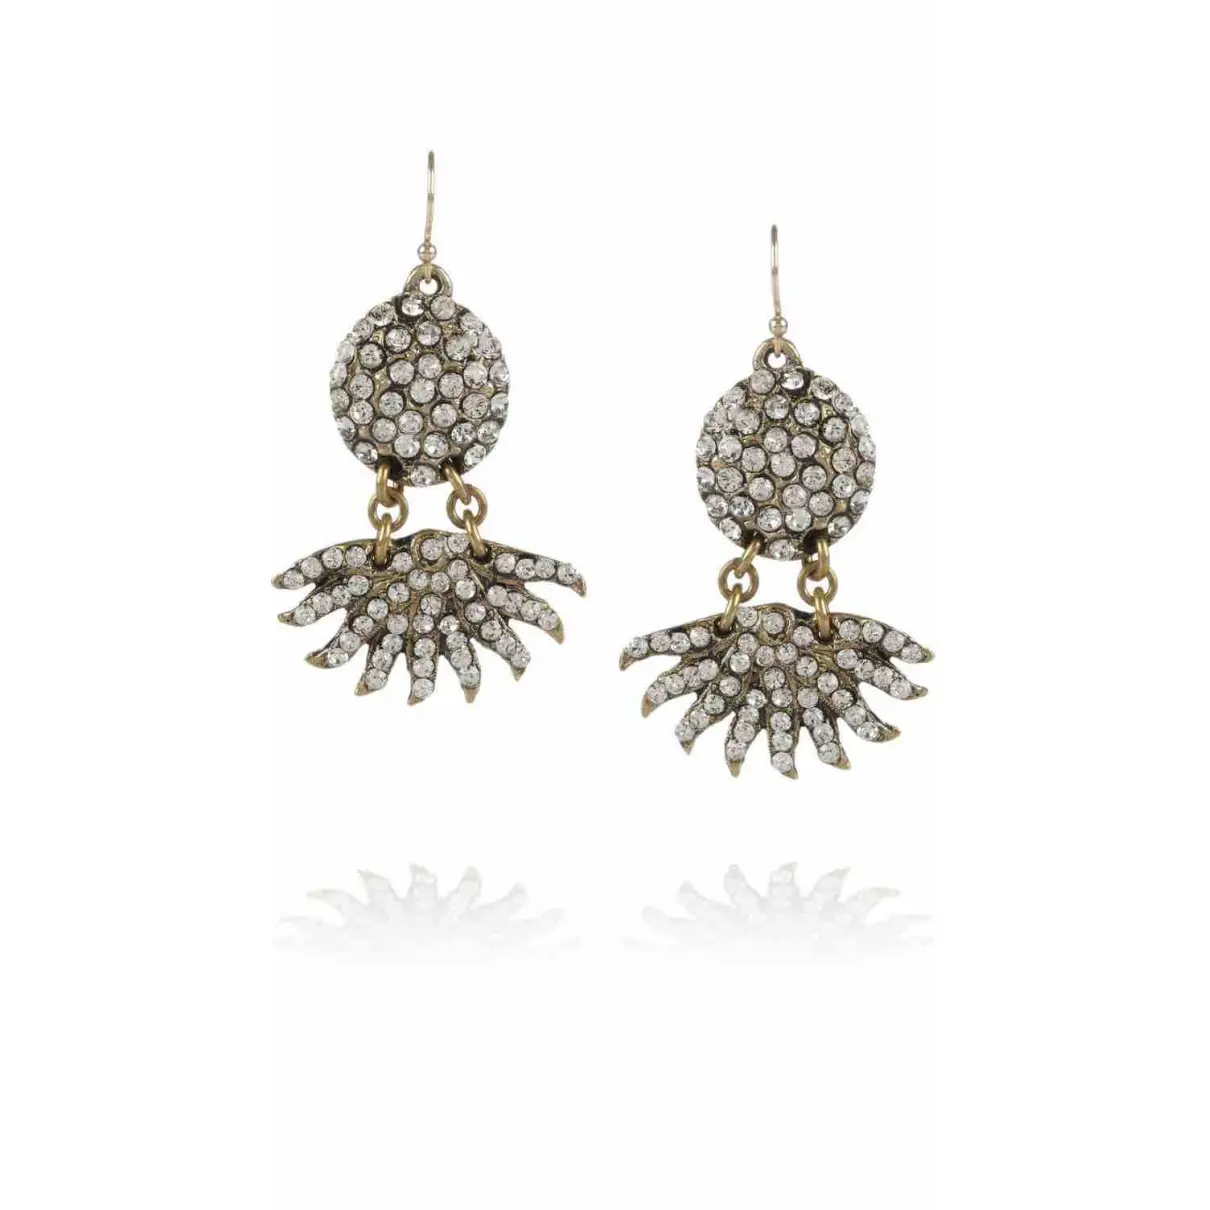 Buy Lulu Frost Crystal earrings online